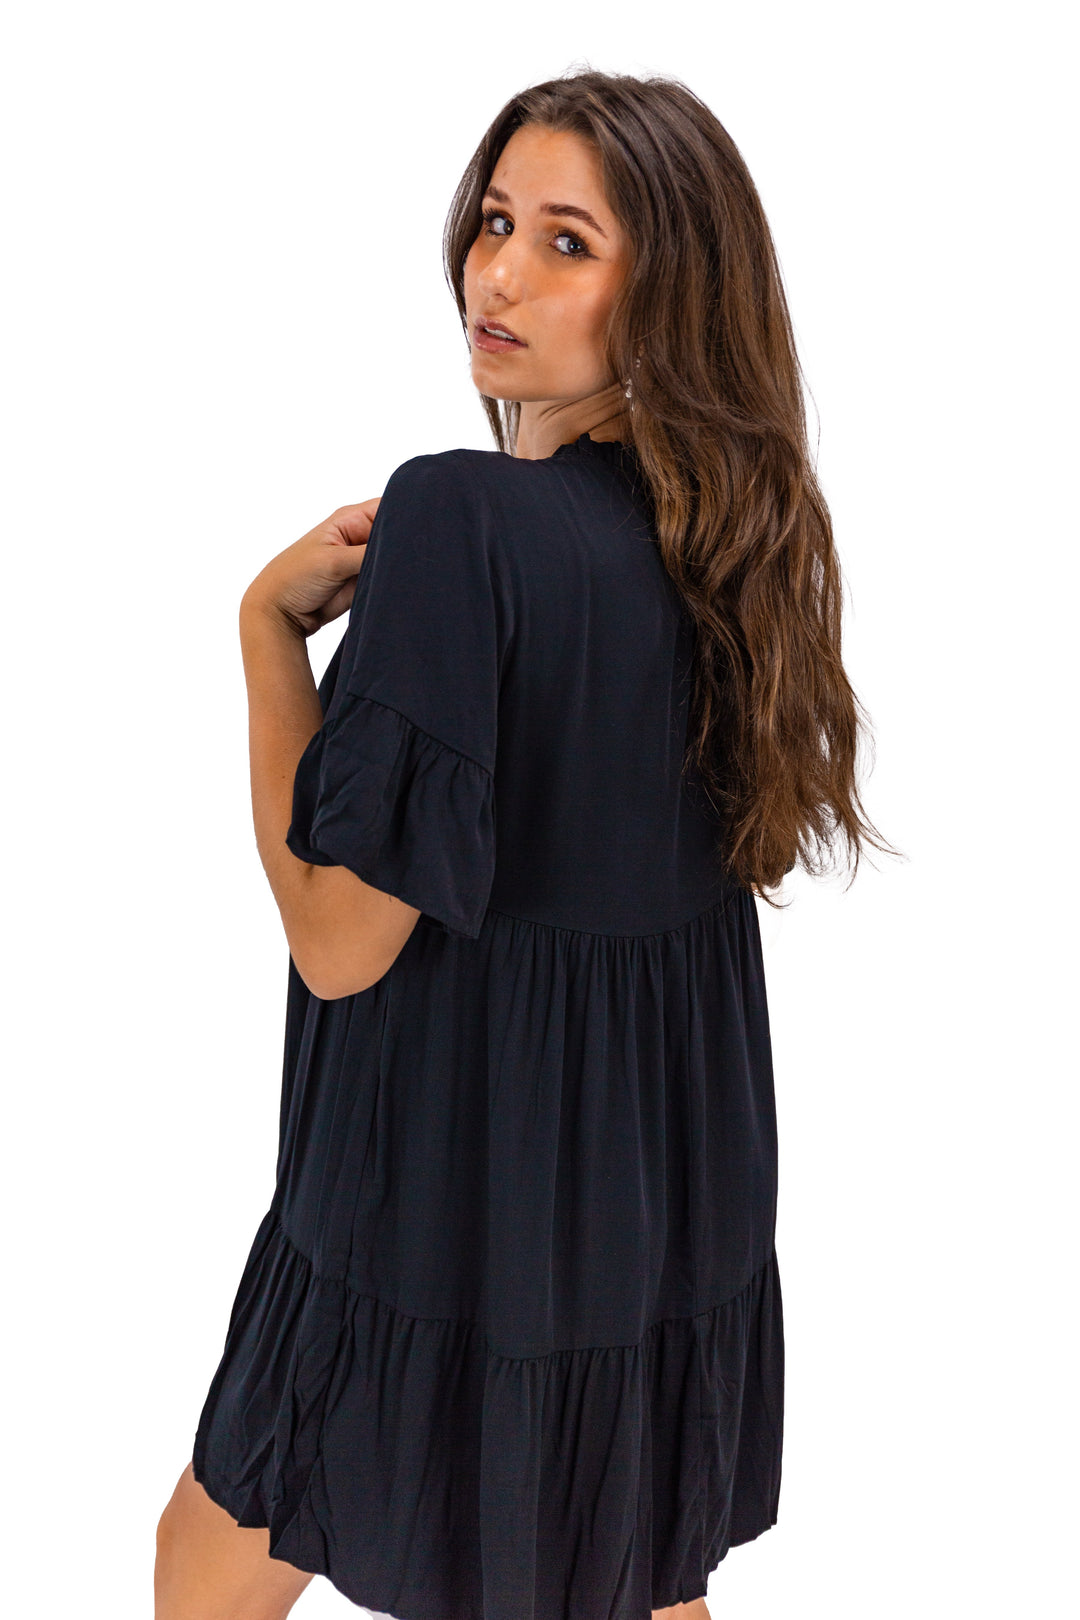 Black Flowy V-neck Mini Dress for Women's